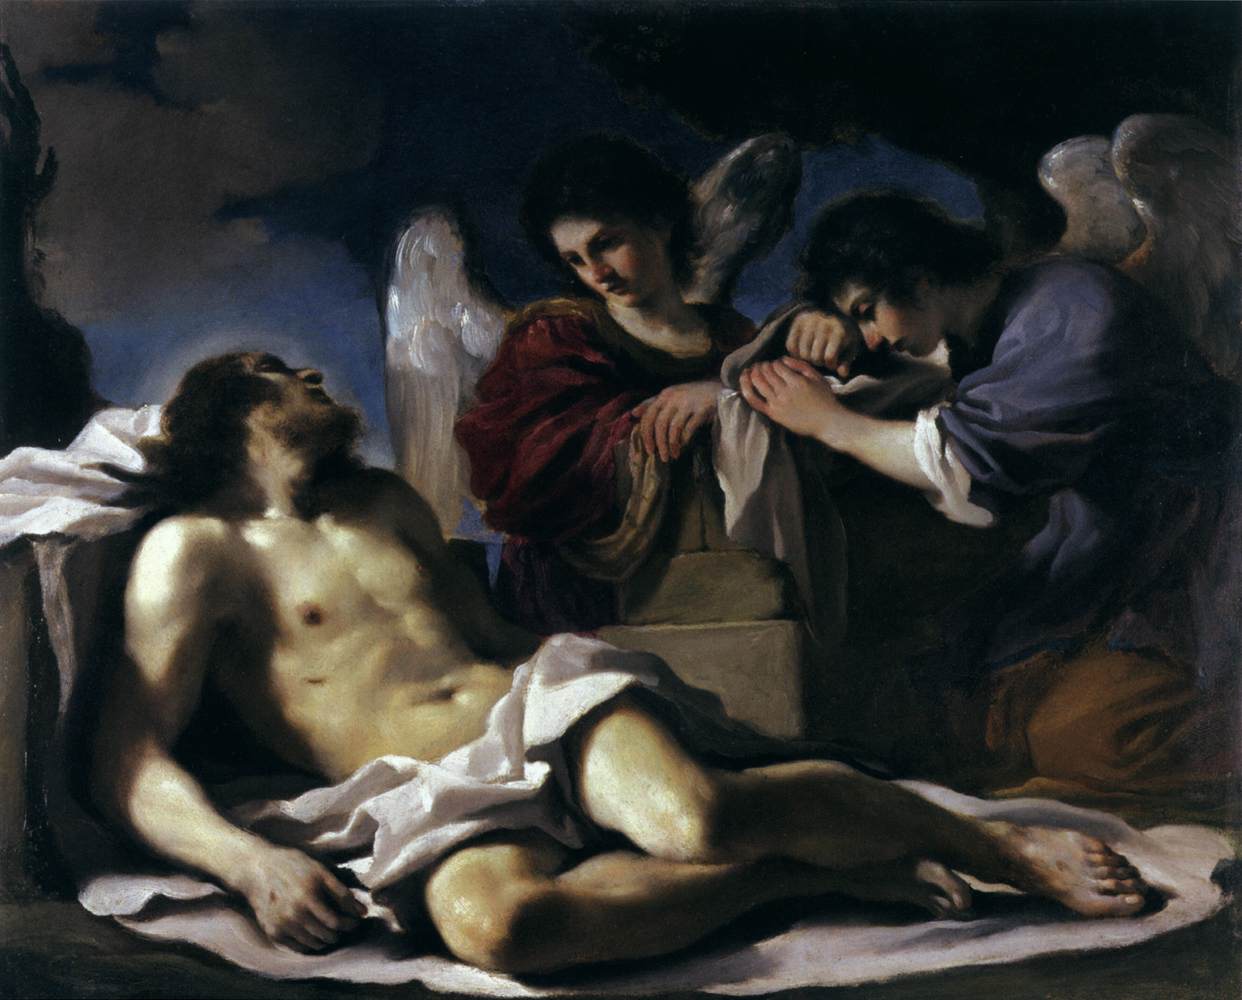 Ölü Mesih iki melek tarafından ağladı